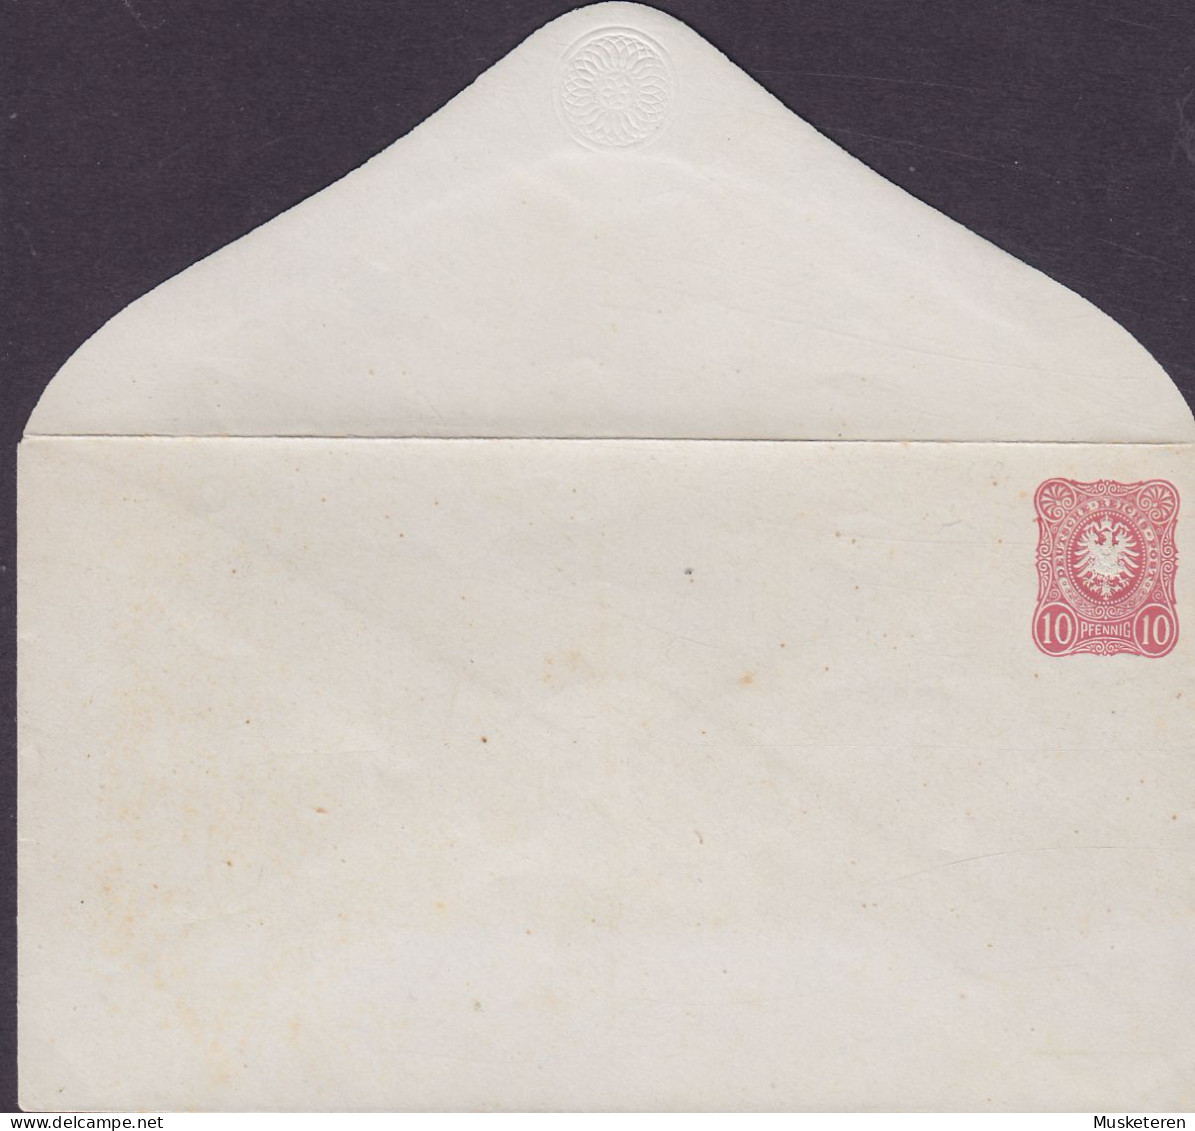 Deutsche Reichspost Postal Stationery Ganzsache Entier Umschlag 1876, 10 Pf. Prägedruck Adler Eagle (Unused) (2 Scans) - Enveloppes